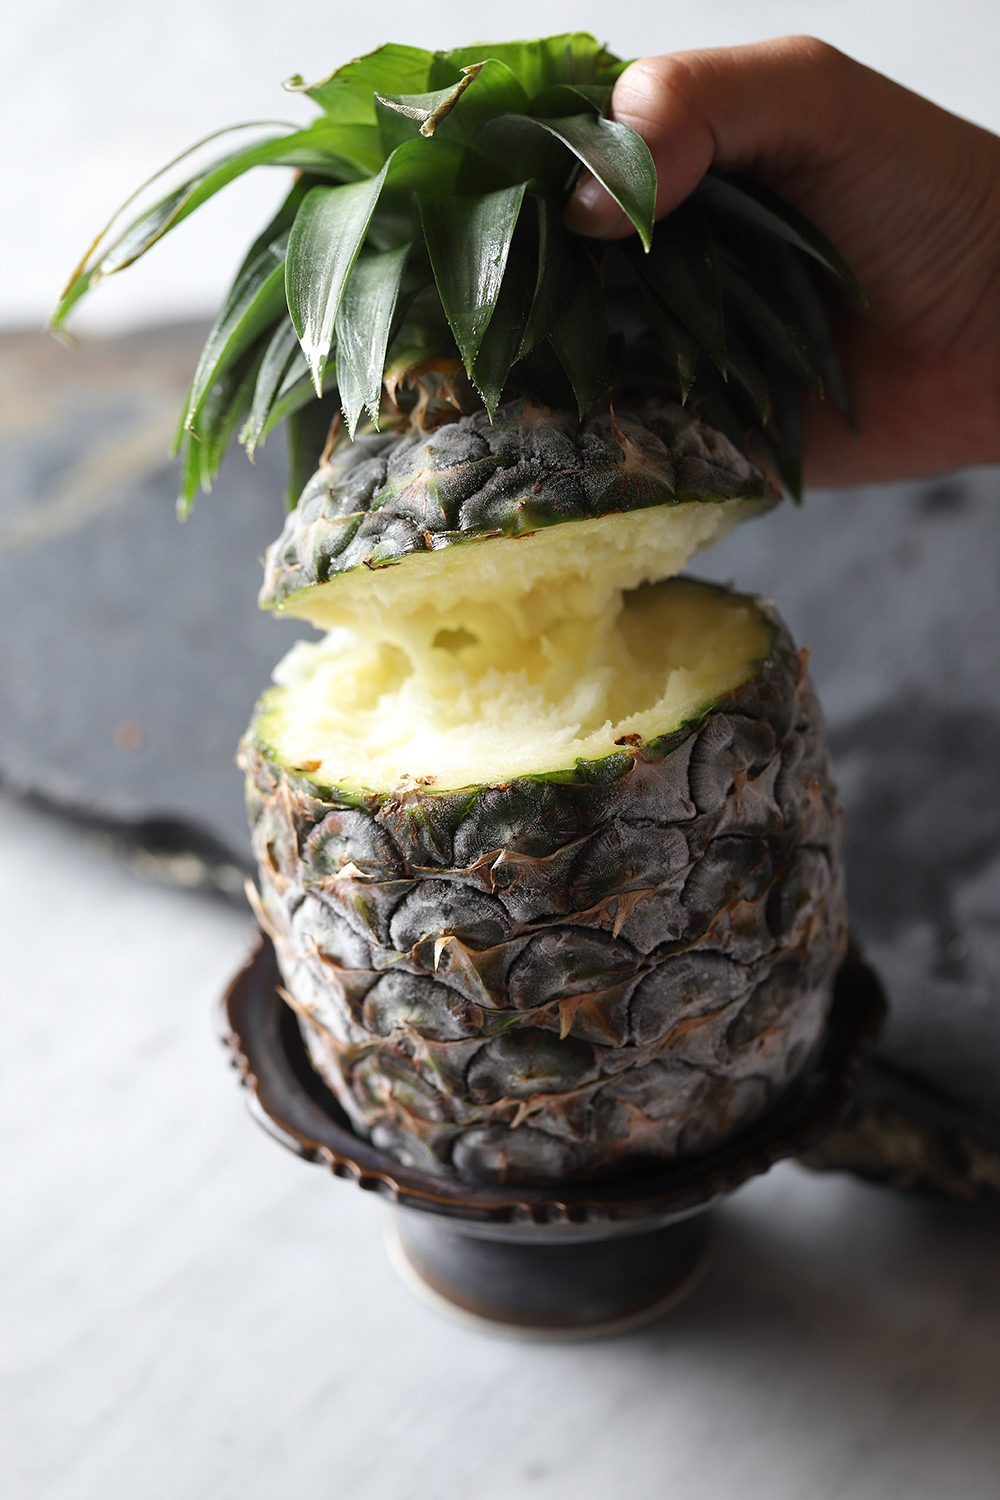 Pineapple Ice Cream